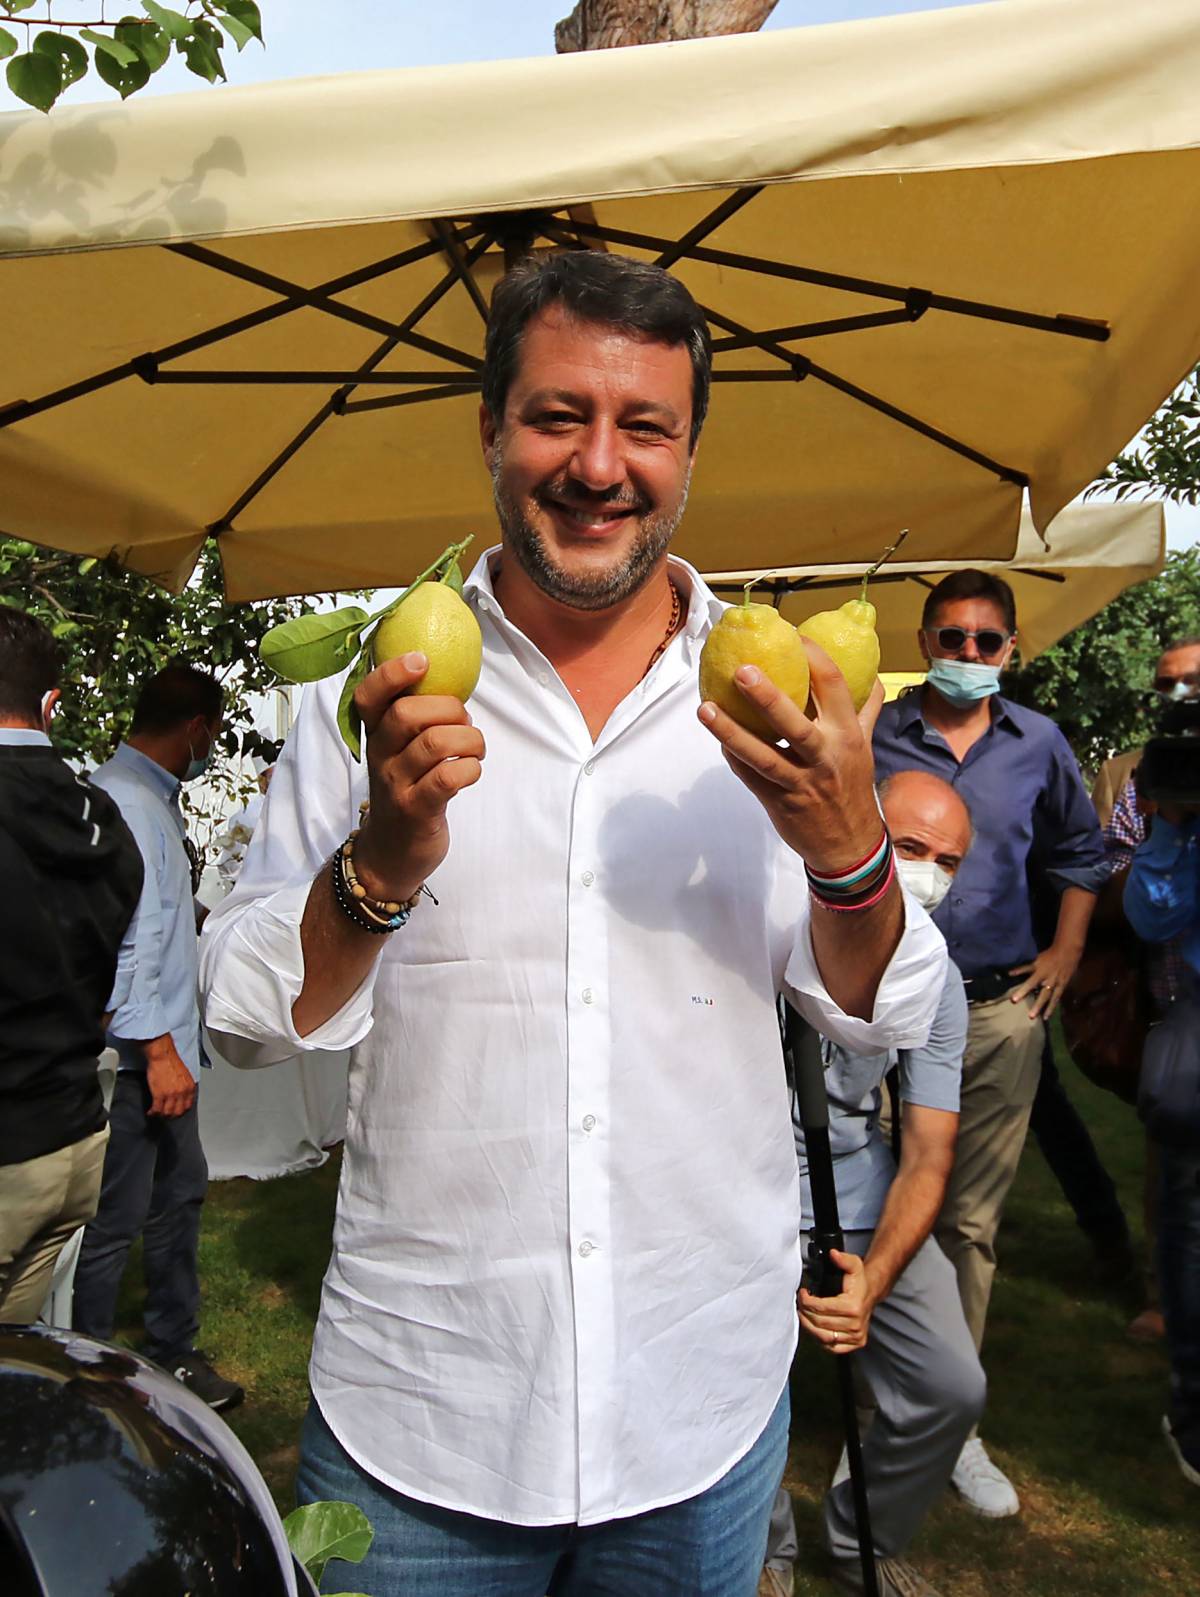 La campagna sotto assedio di Salvini leader d'opposizione coi pm sul collo